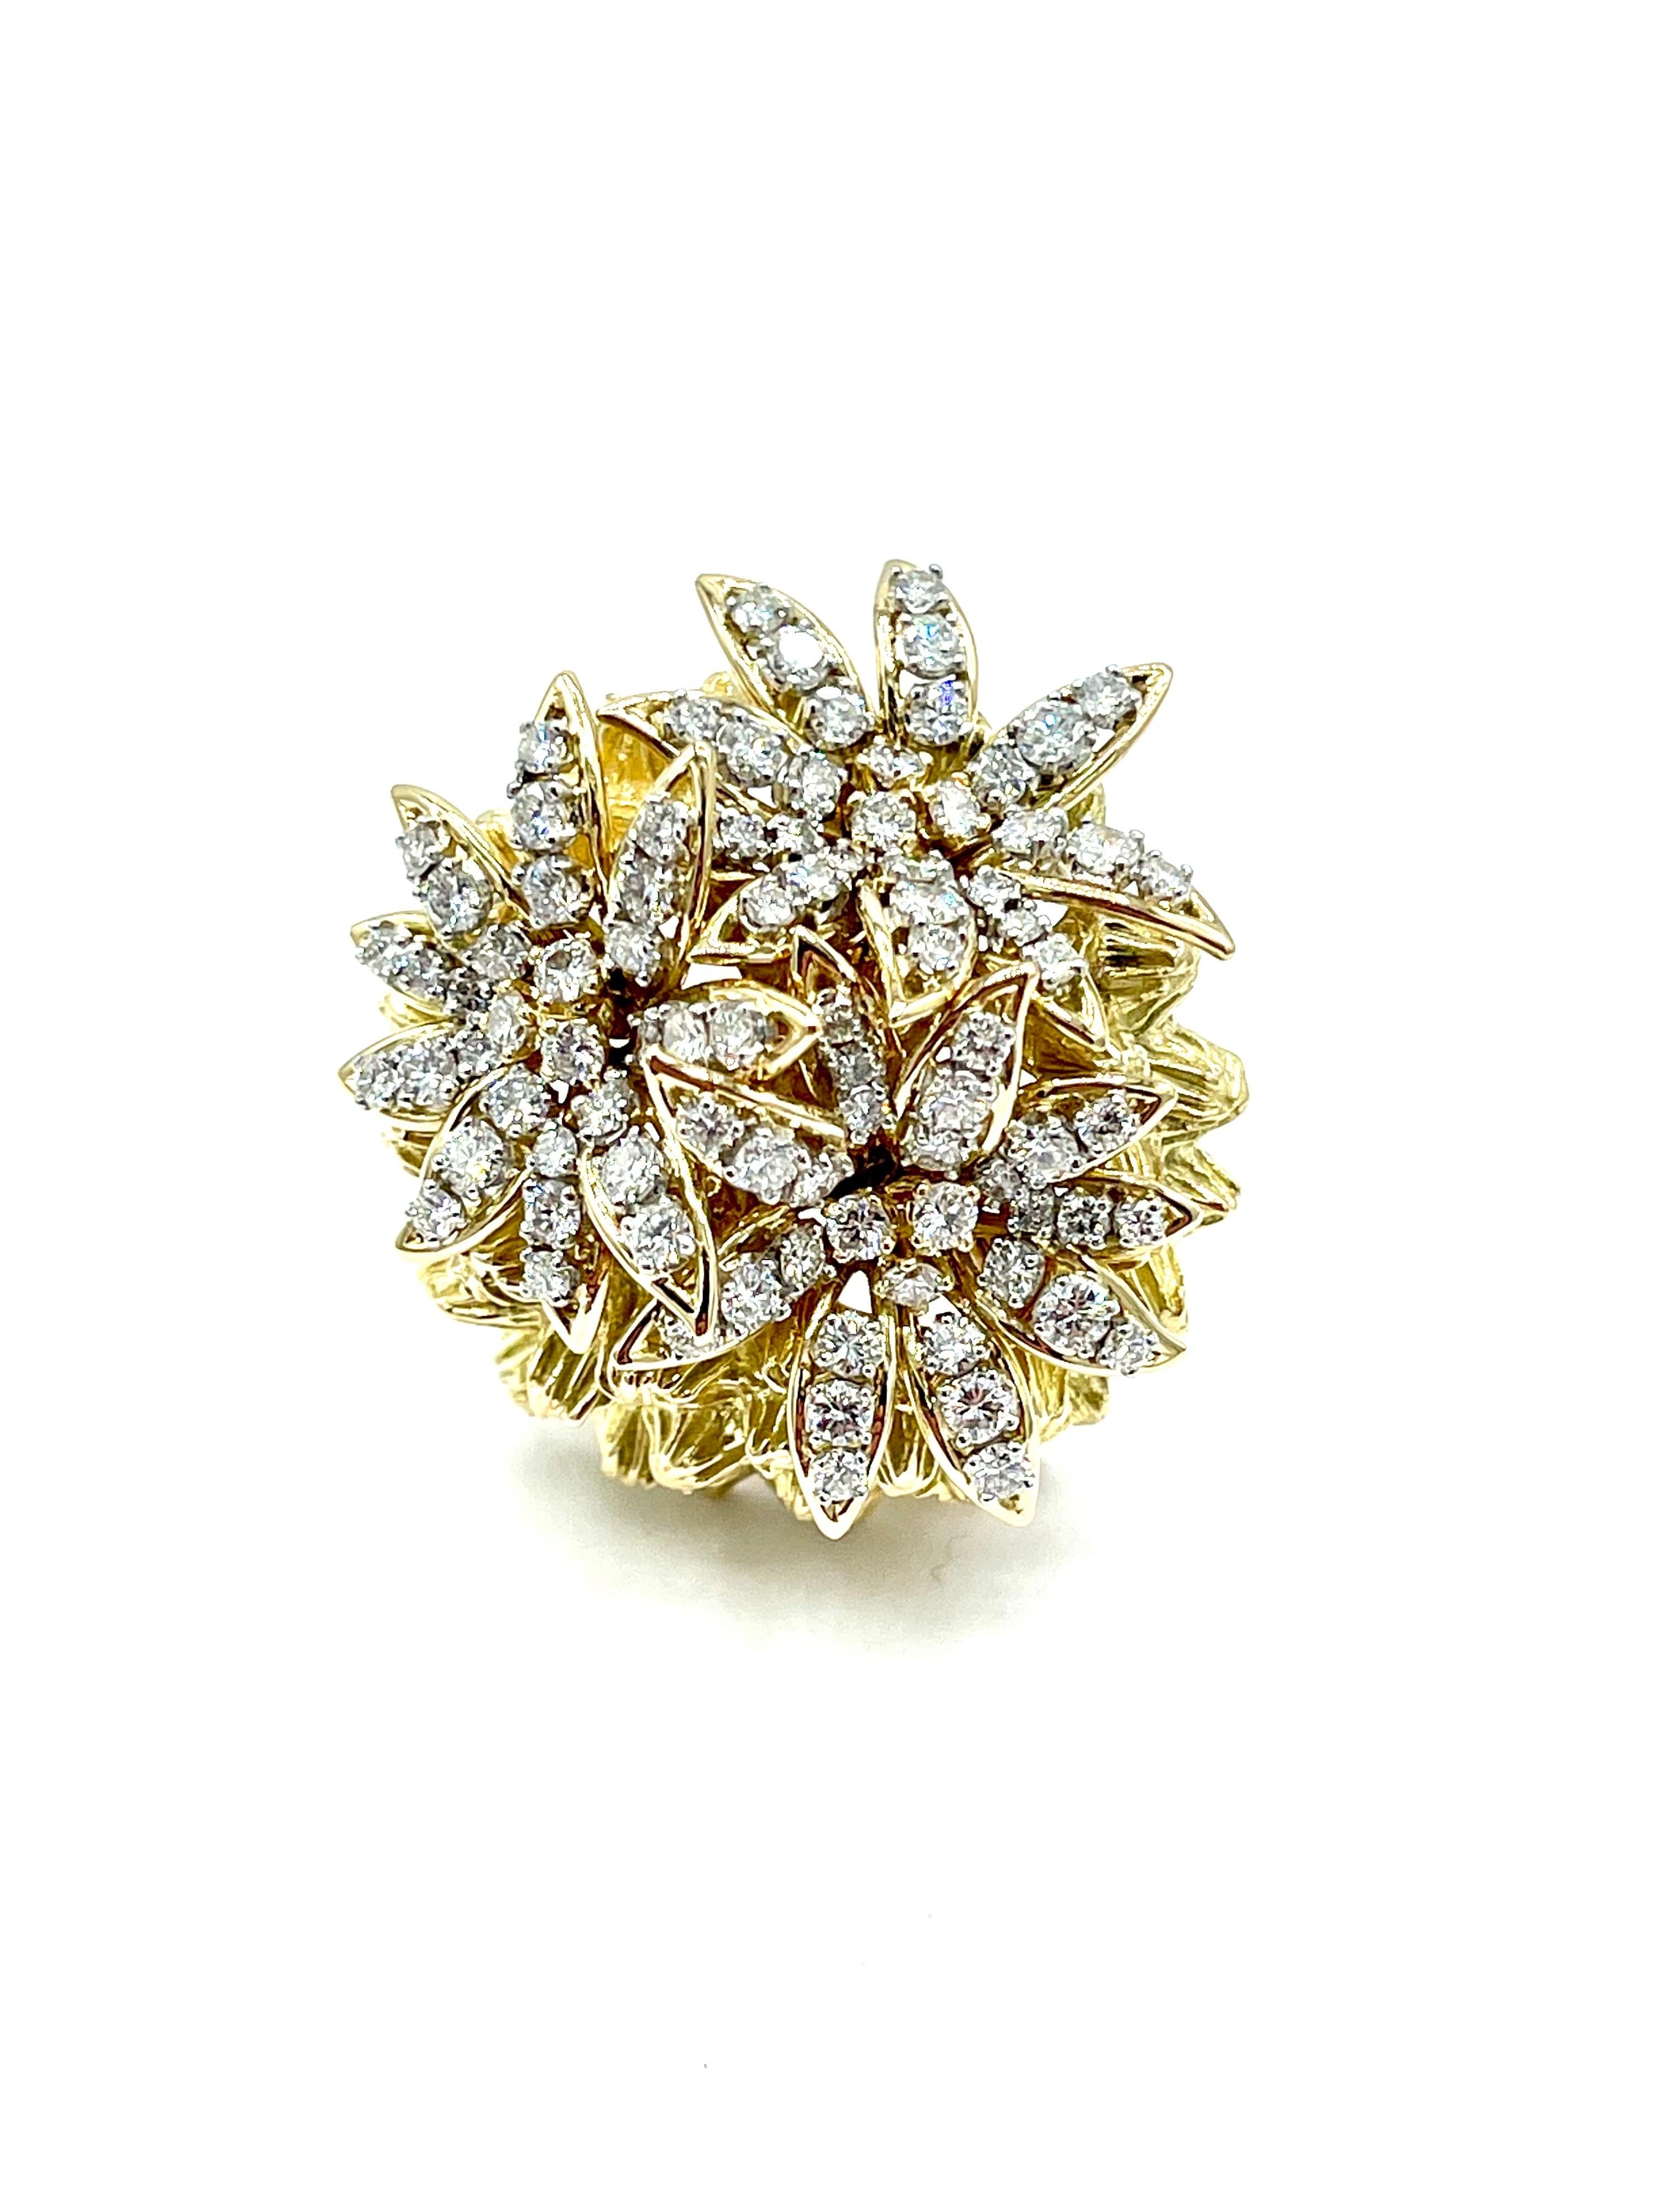 Magnifique broche en diamant et or jaune 18 carats de fabrication française !  La broche est composée de trois fleurs rondes en diamant brillant reposant sur un dôme texturé détaillé en or jaune 18 carats.  Les diamants ont un poids total de 2,60